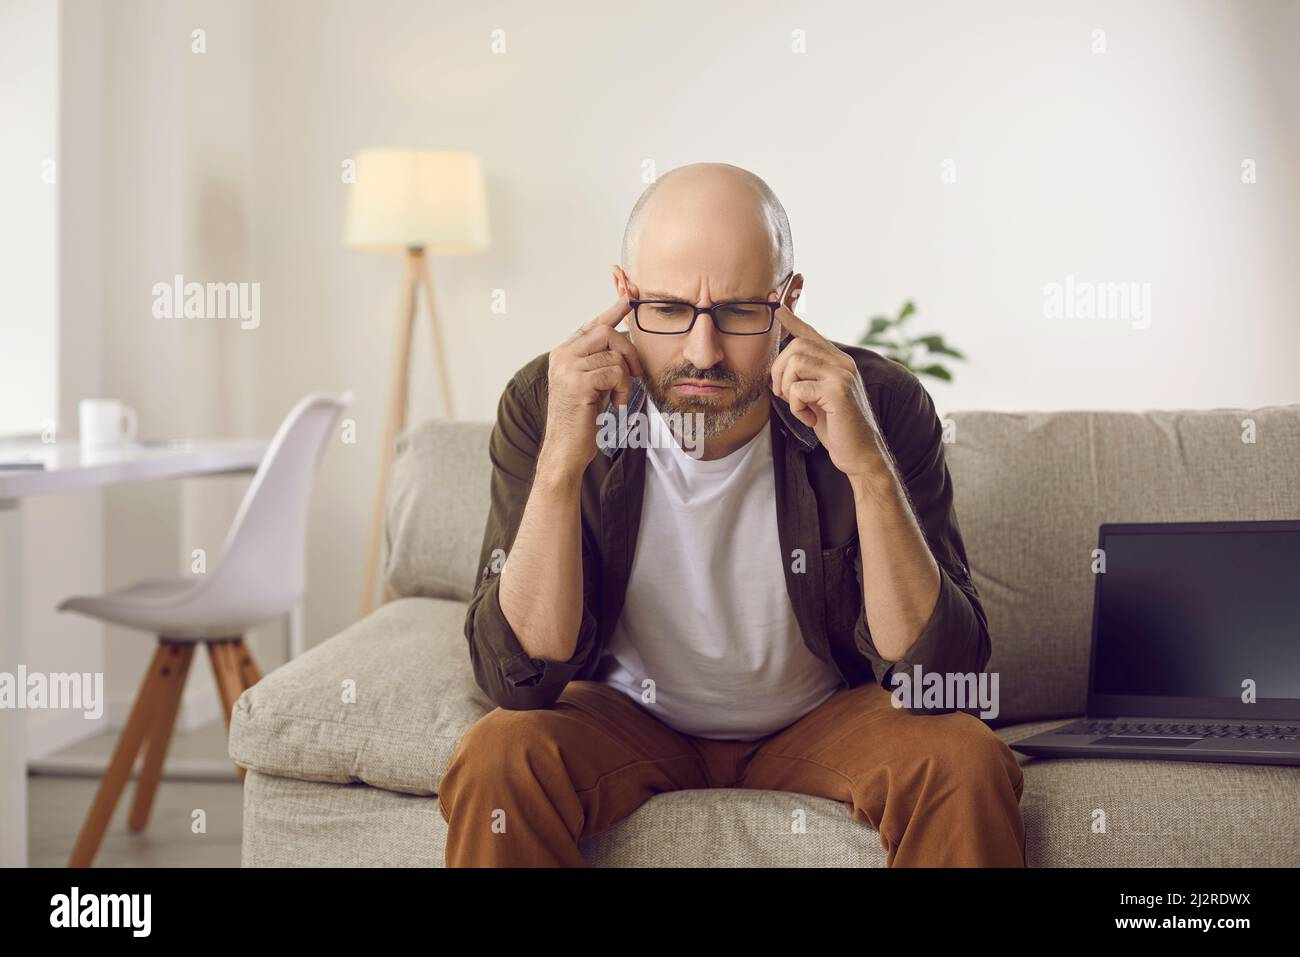 Serious verwirrt Mann auf der Couch sitzen und denken, versuchen, schwierige Frage zu beantworten Stockfoto